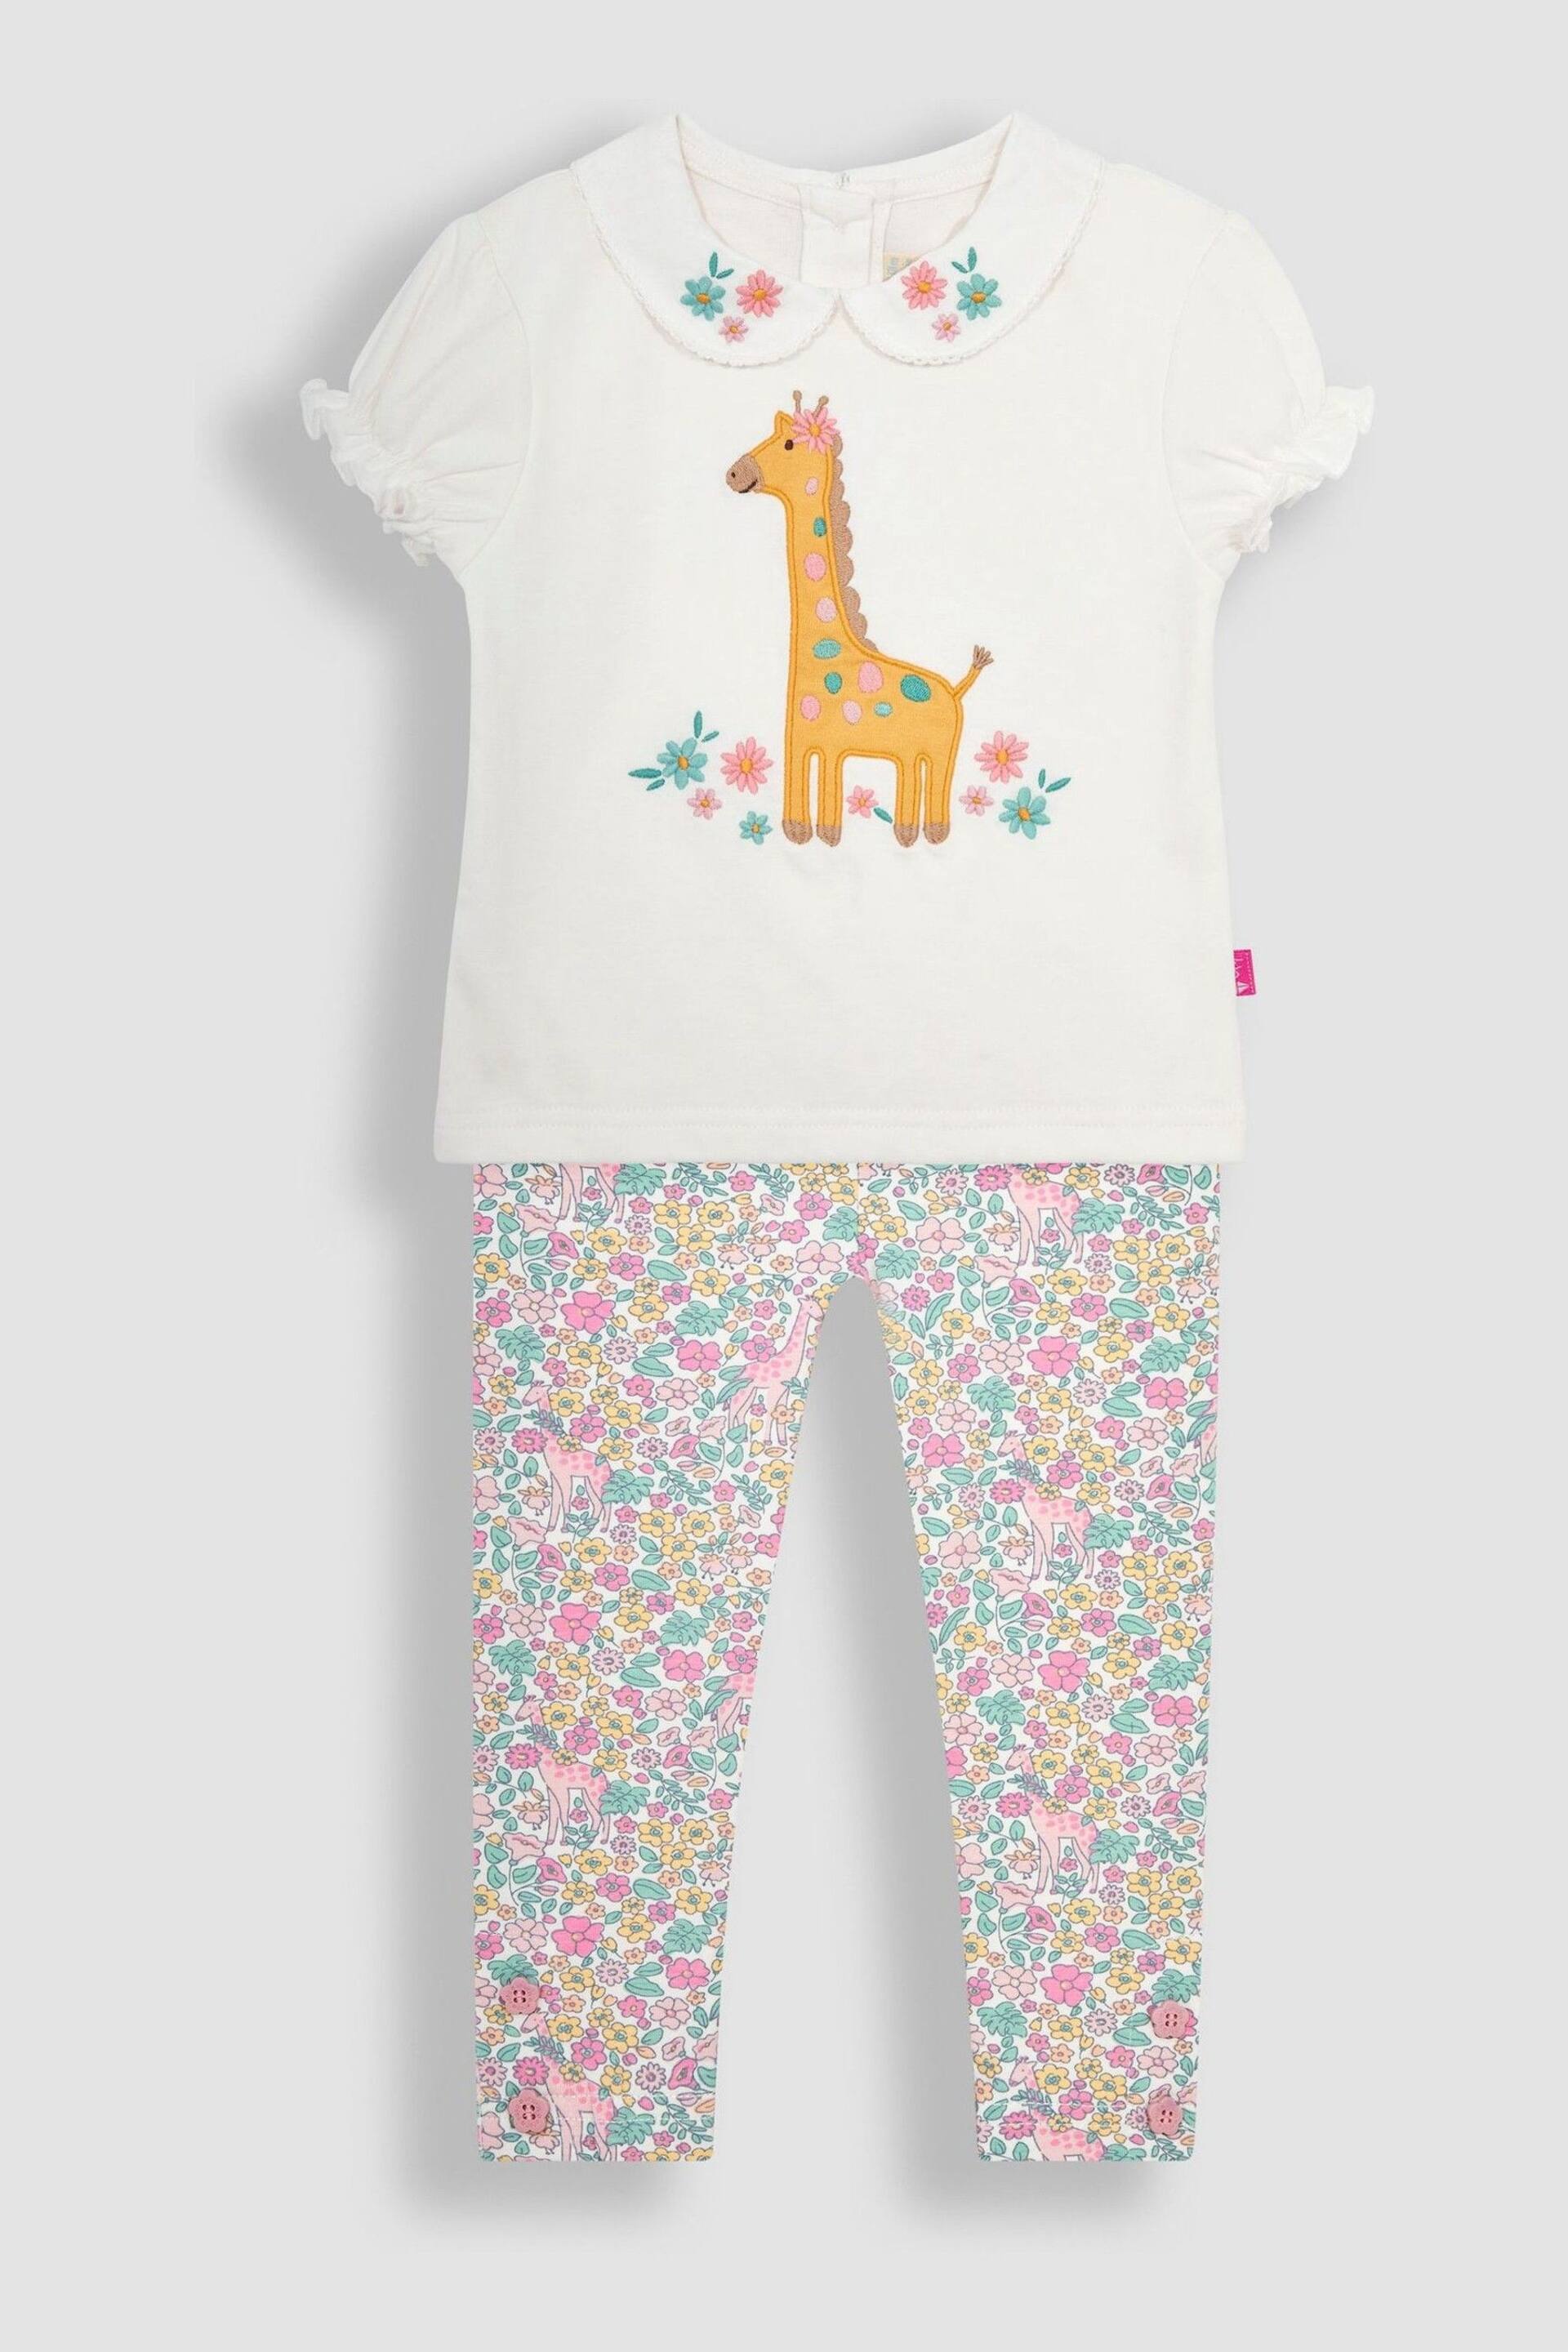 JoJo Maman Bébé Cream 2-Piece Giraffe Applique T-Shirt & Leggings Set - Image 1 of 4